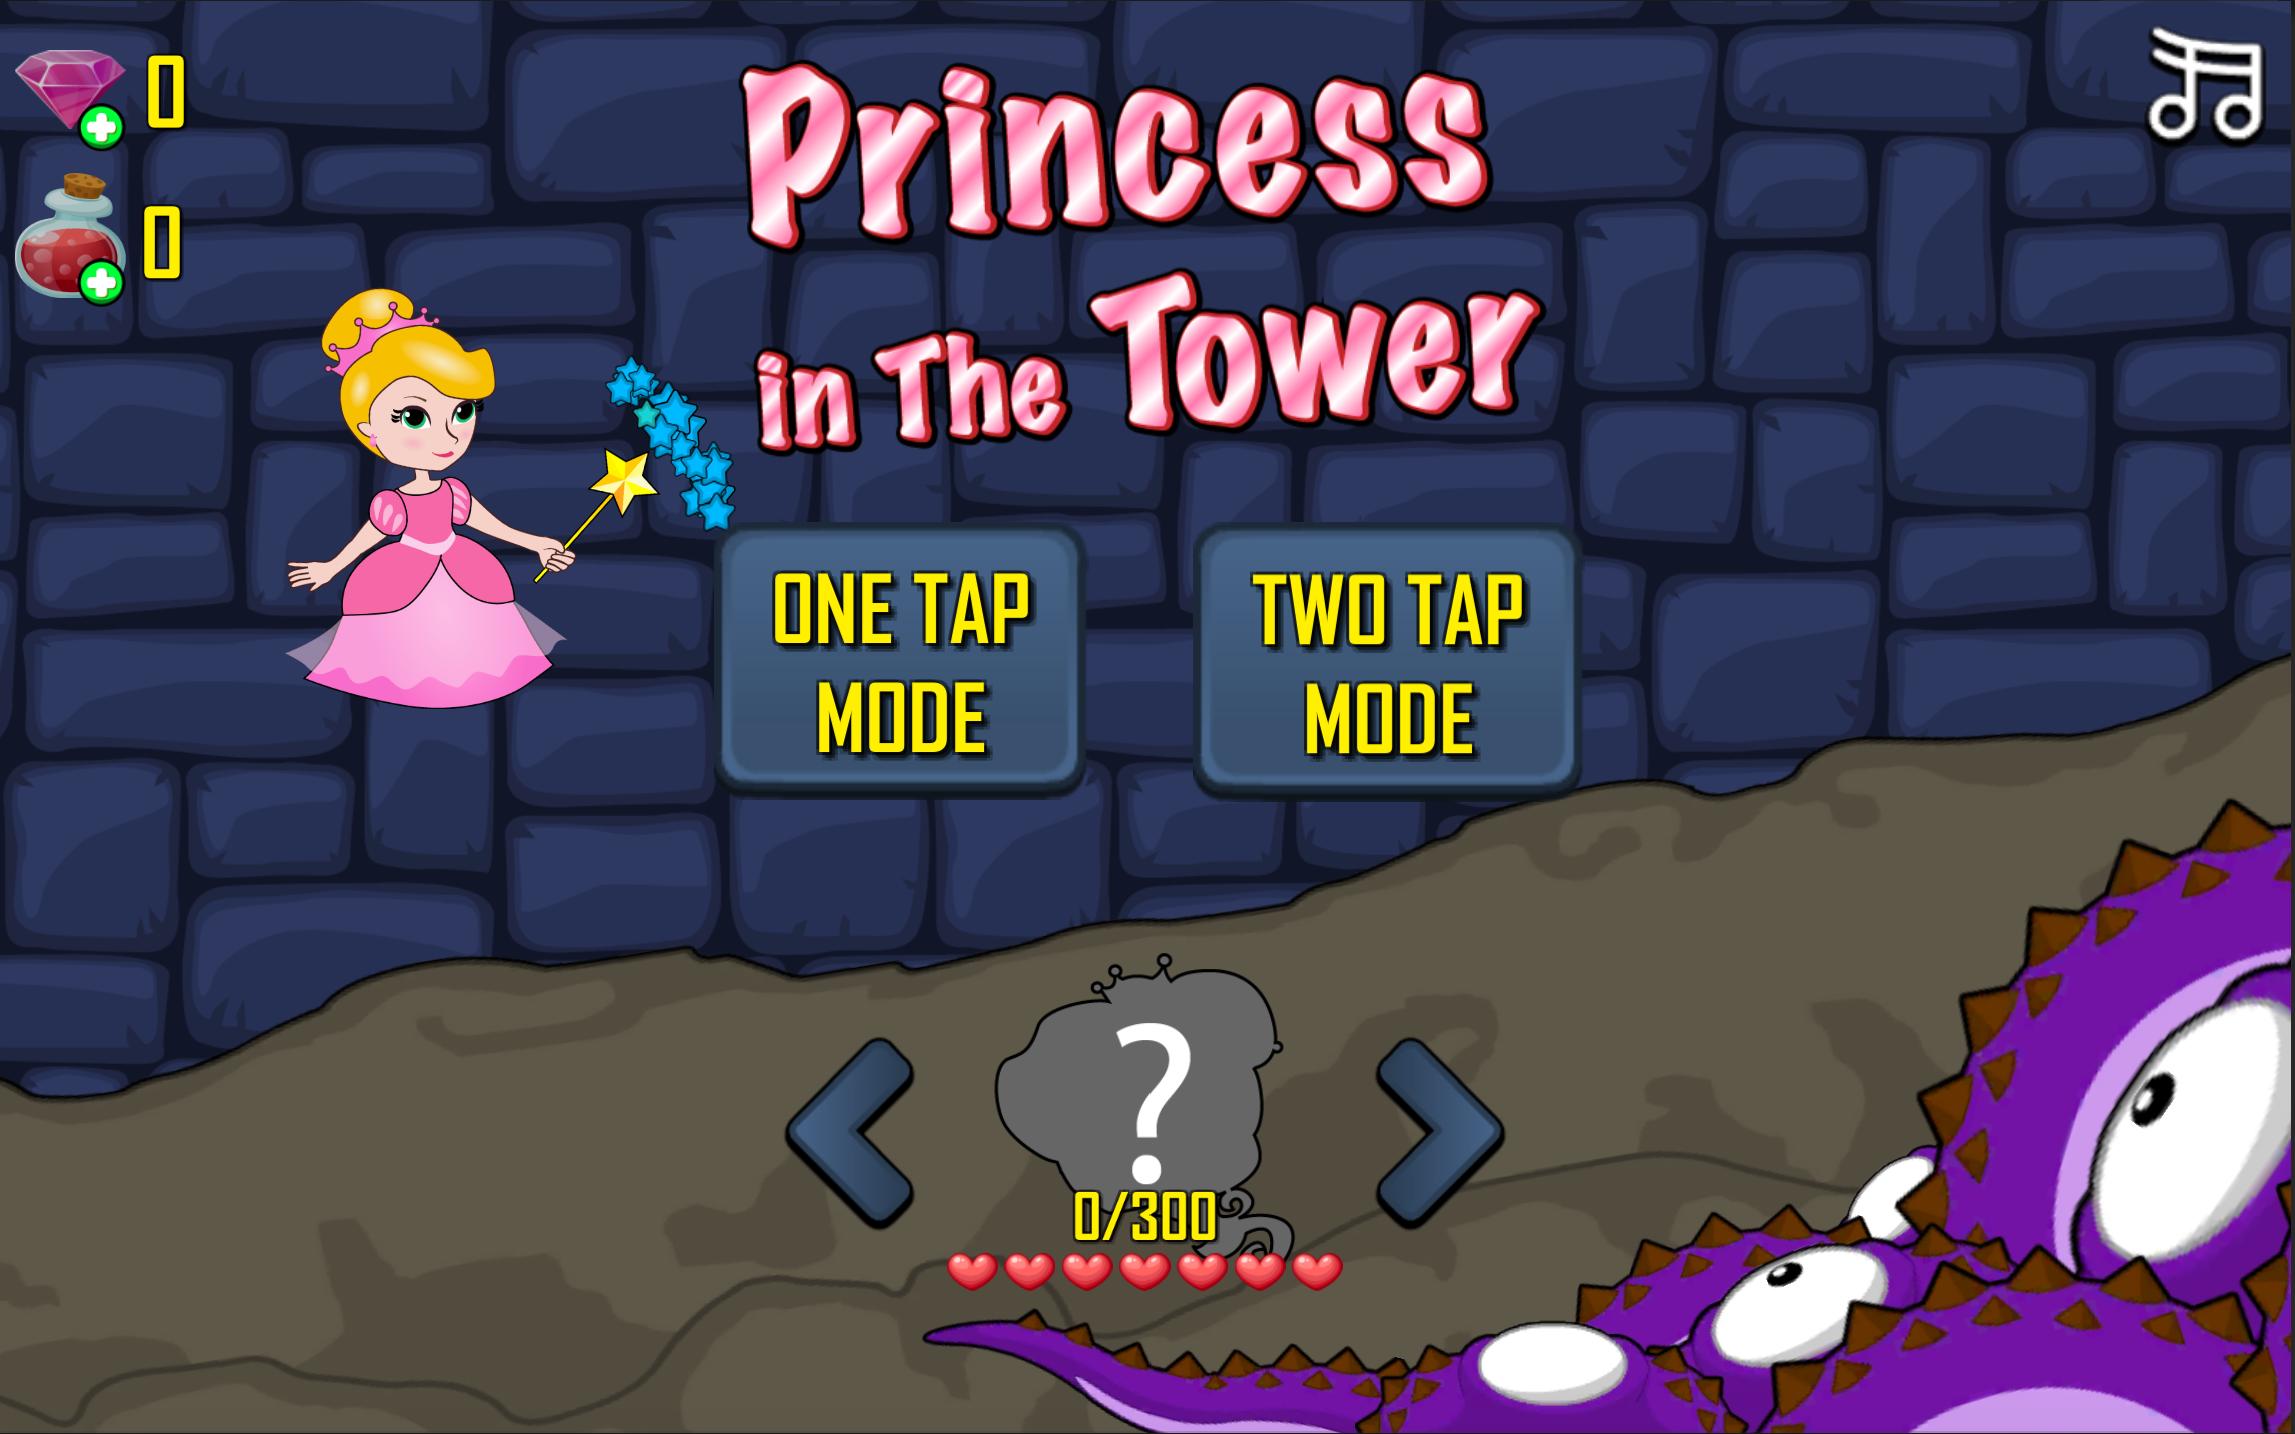 Tower Princess игра. Старая игра про принцессу в башне. Принцесса в башне. Принцесса и башня / the Princess and the Tower. Игра принцесса 1